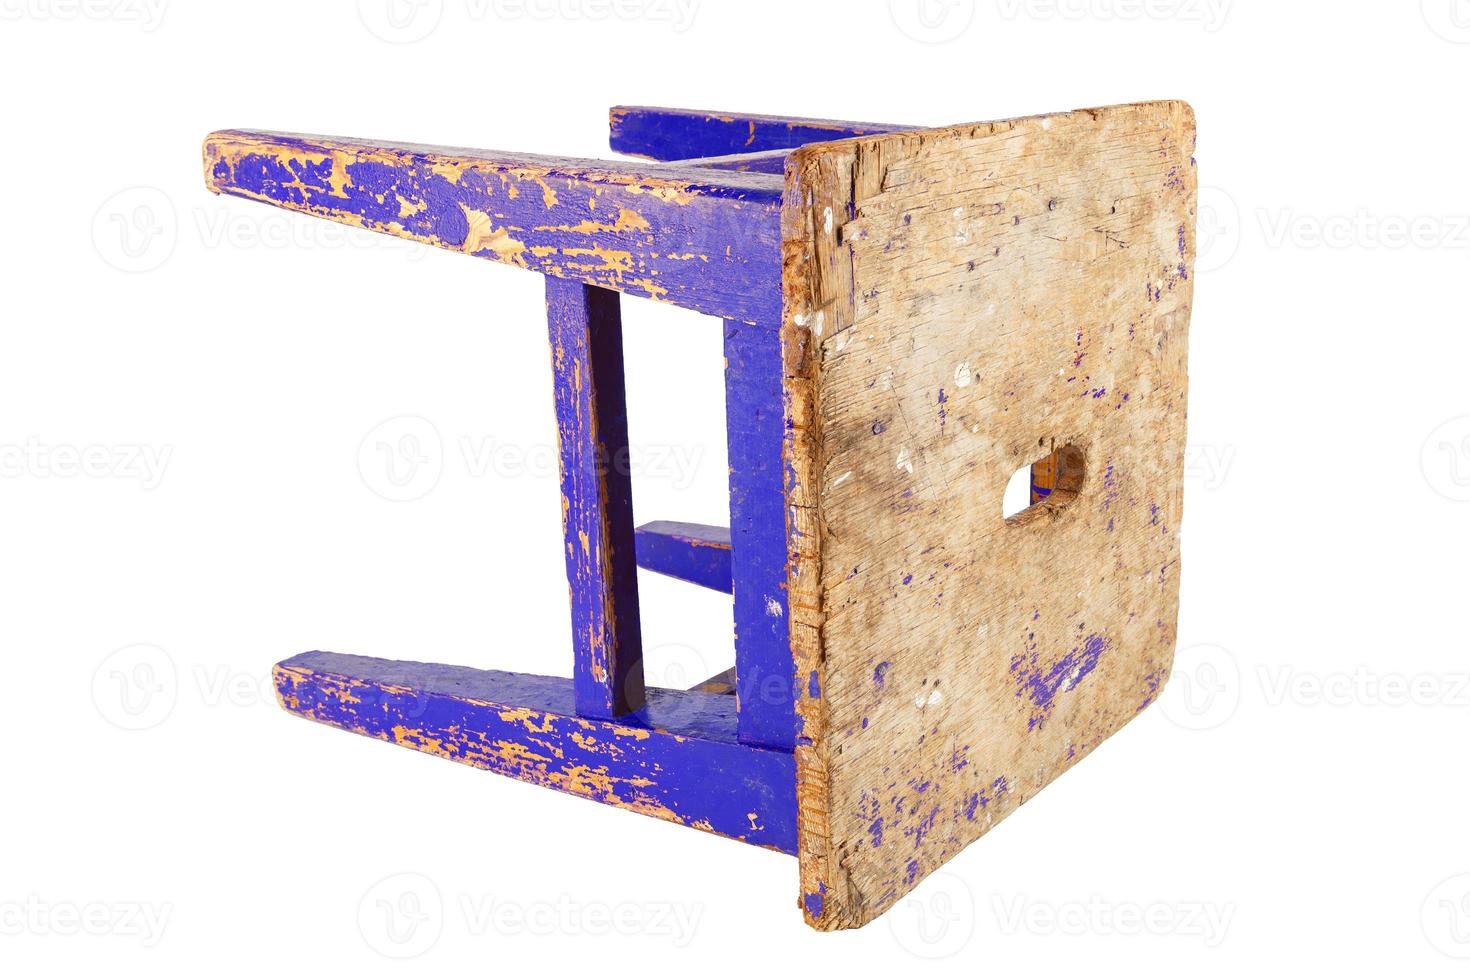 taburete de madera antiguo con pintura azul desconchada. silla estilo loft aislada en un fondo blanco. foto